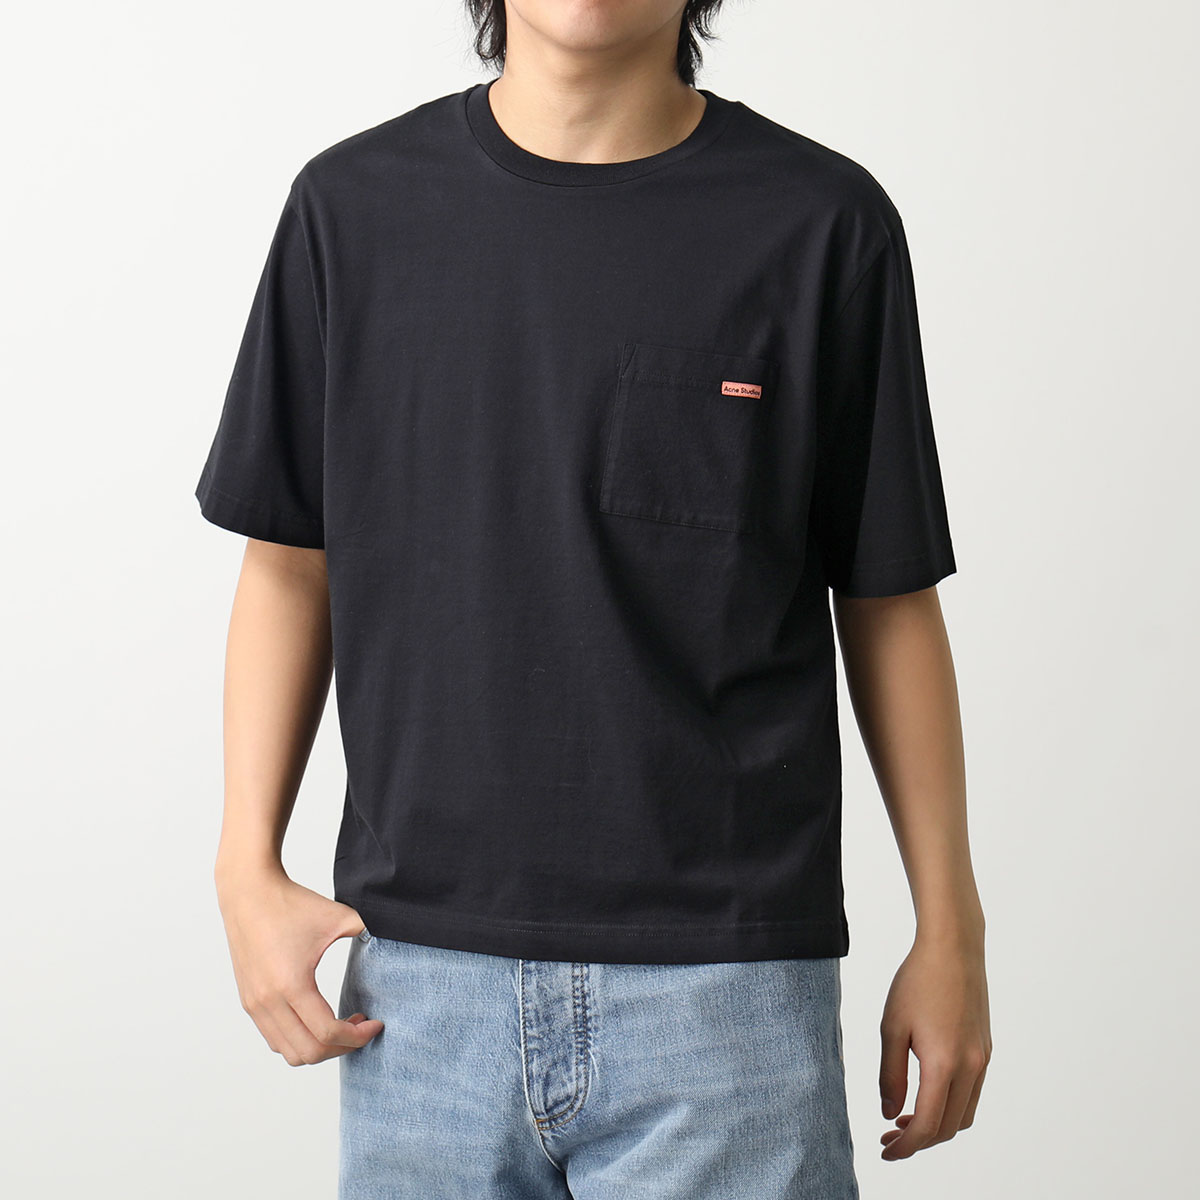 Acne Studios アクネストゥディオズ Tシャツ CL0219 FN-UX-TSHI000023 メンズ 半袖 カットソー 胸ポケット  ちびロゴT クルーネック カラー2色